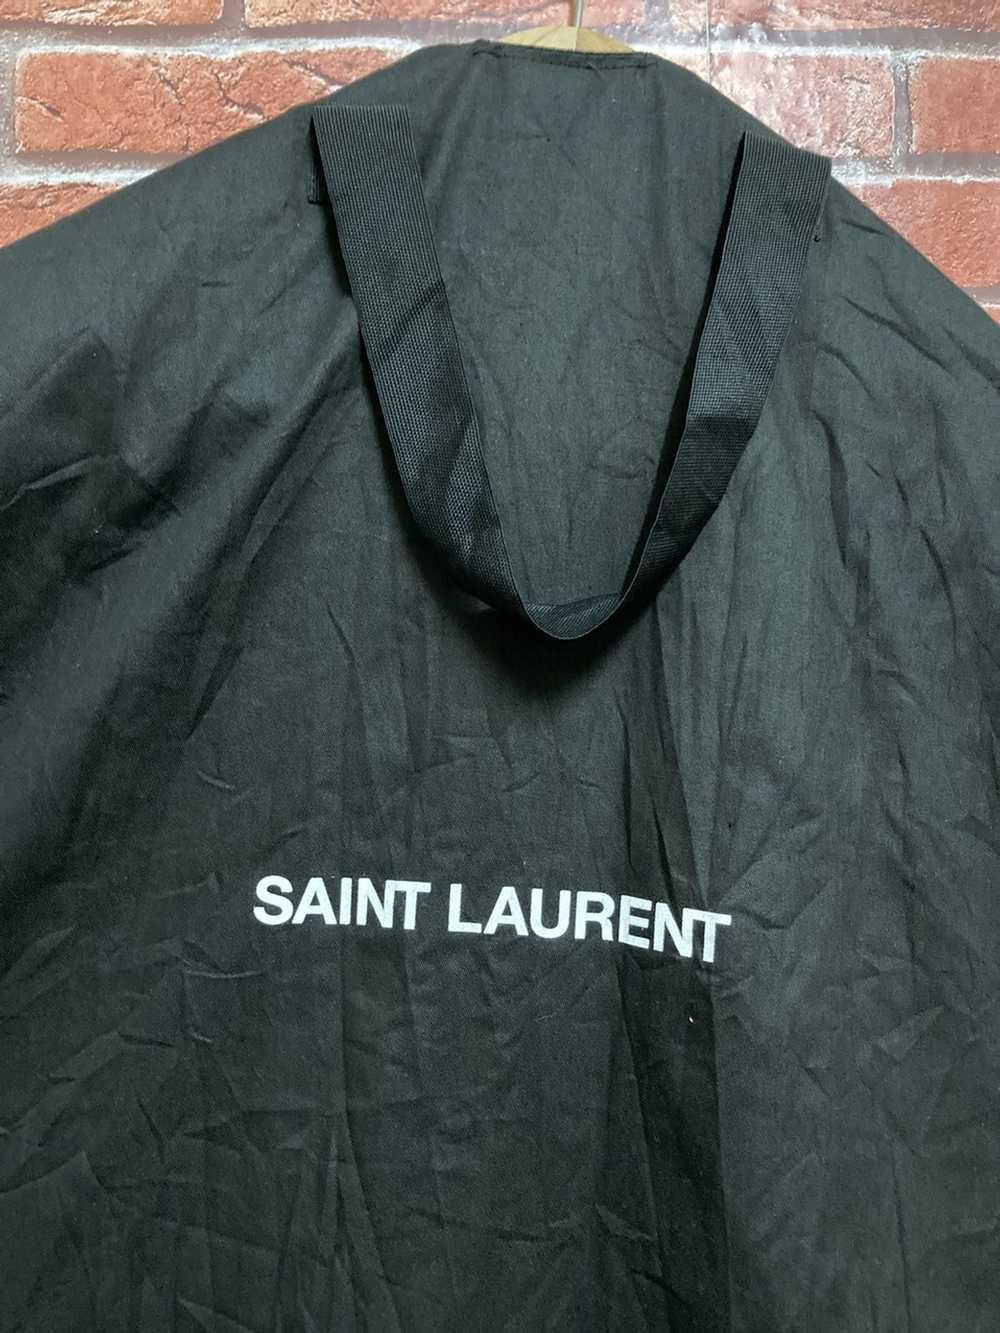 Saint Laurent Paris Saint Laurent - image 2